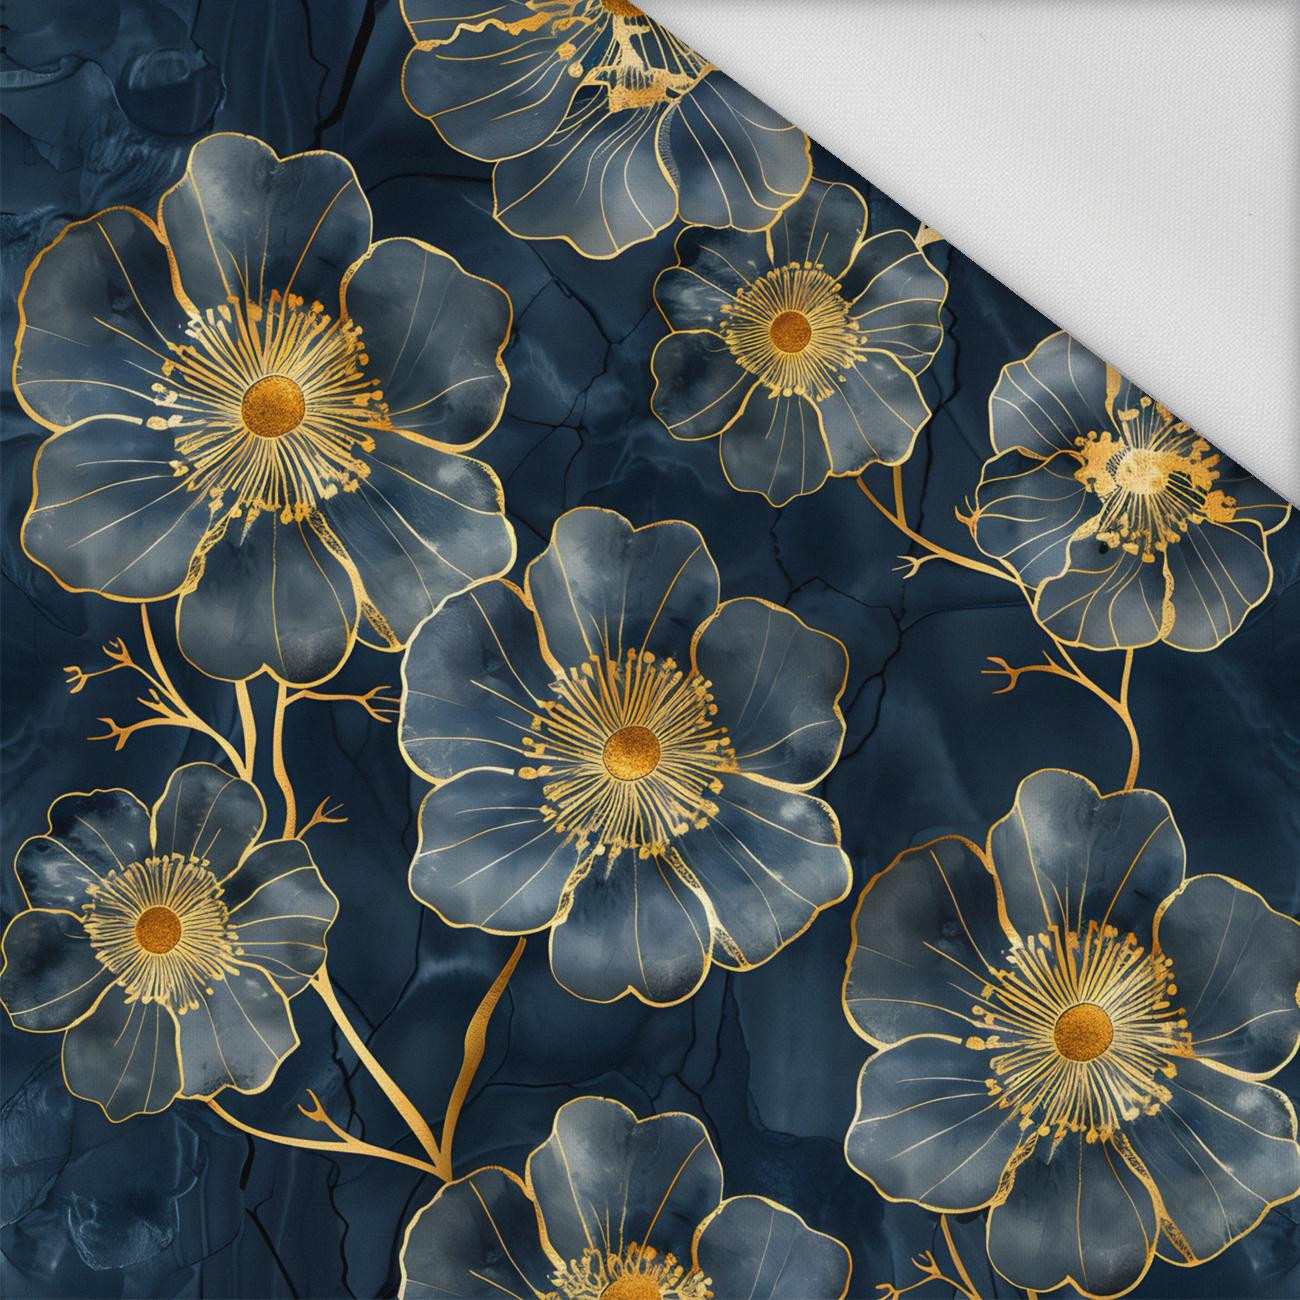 FLOWERS wz.20 - Waterproof woven fabric